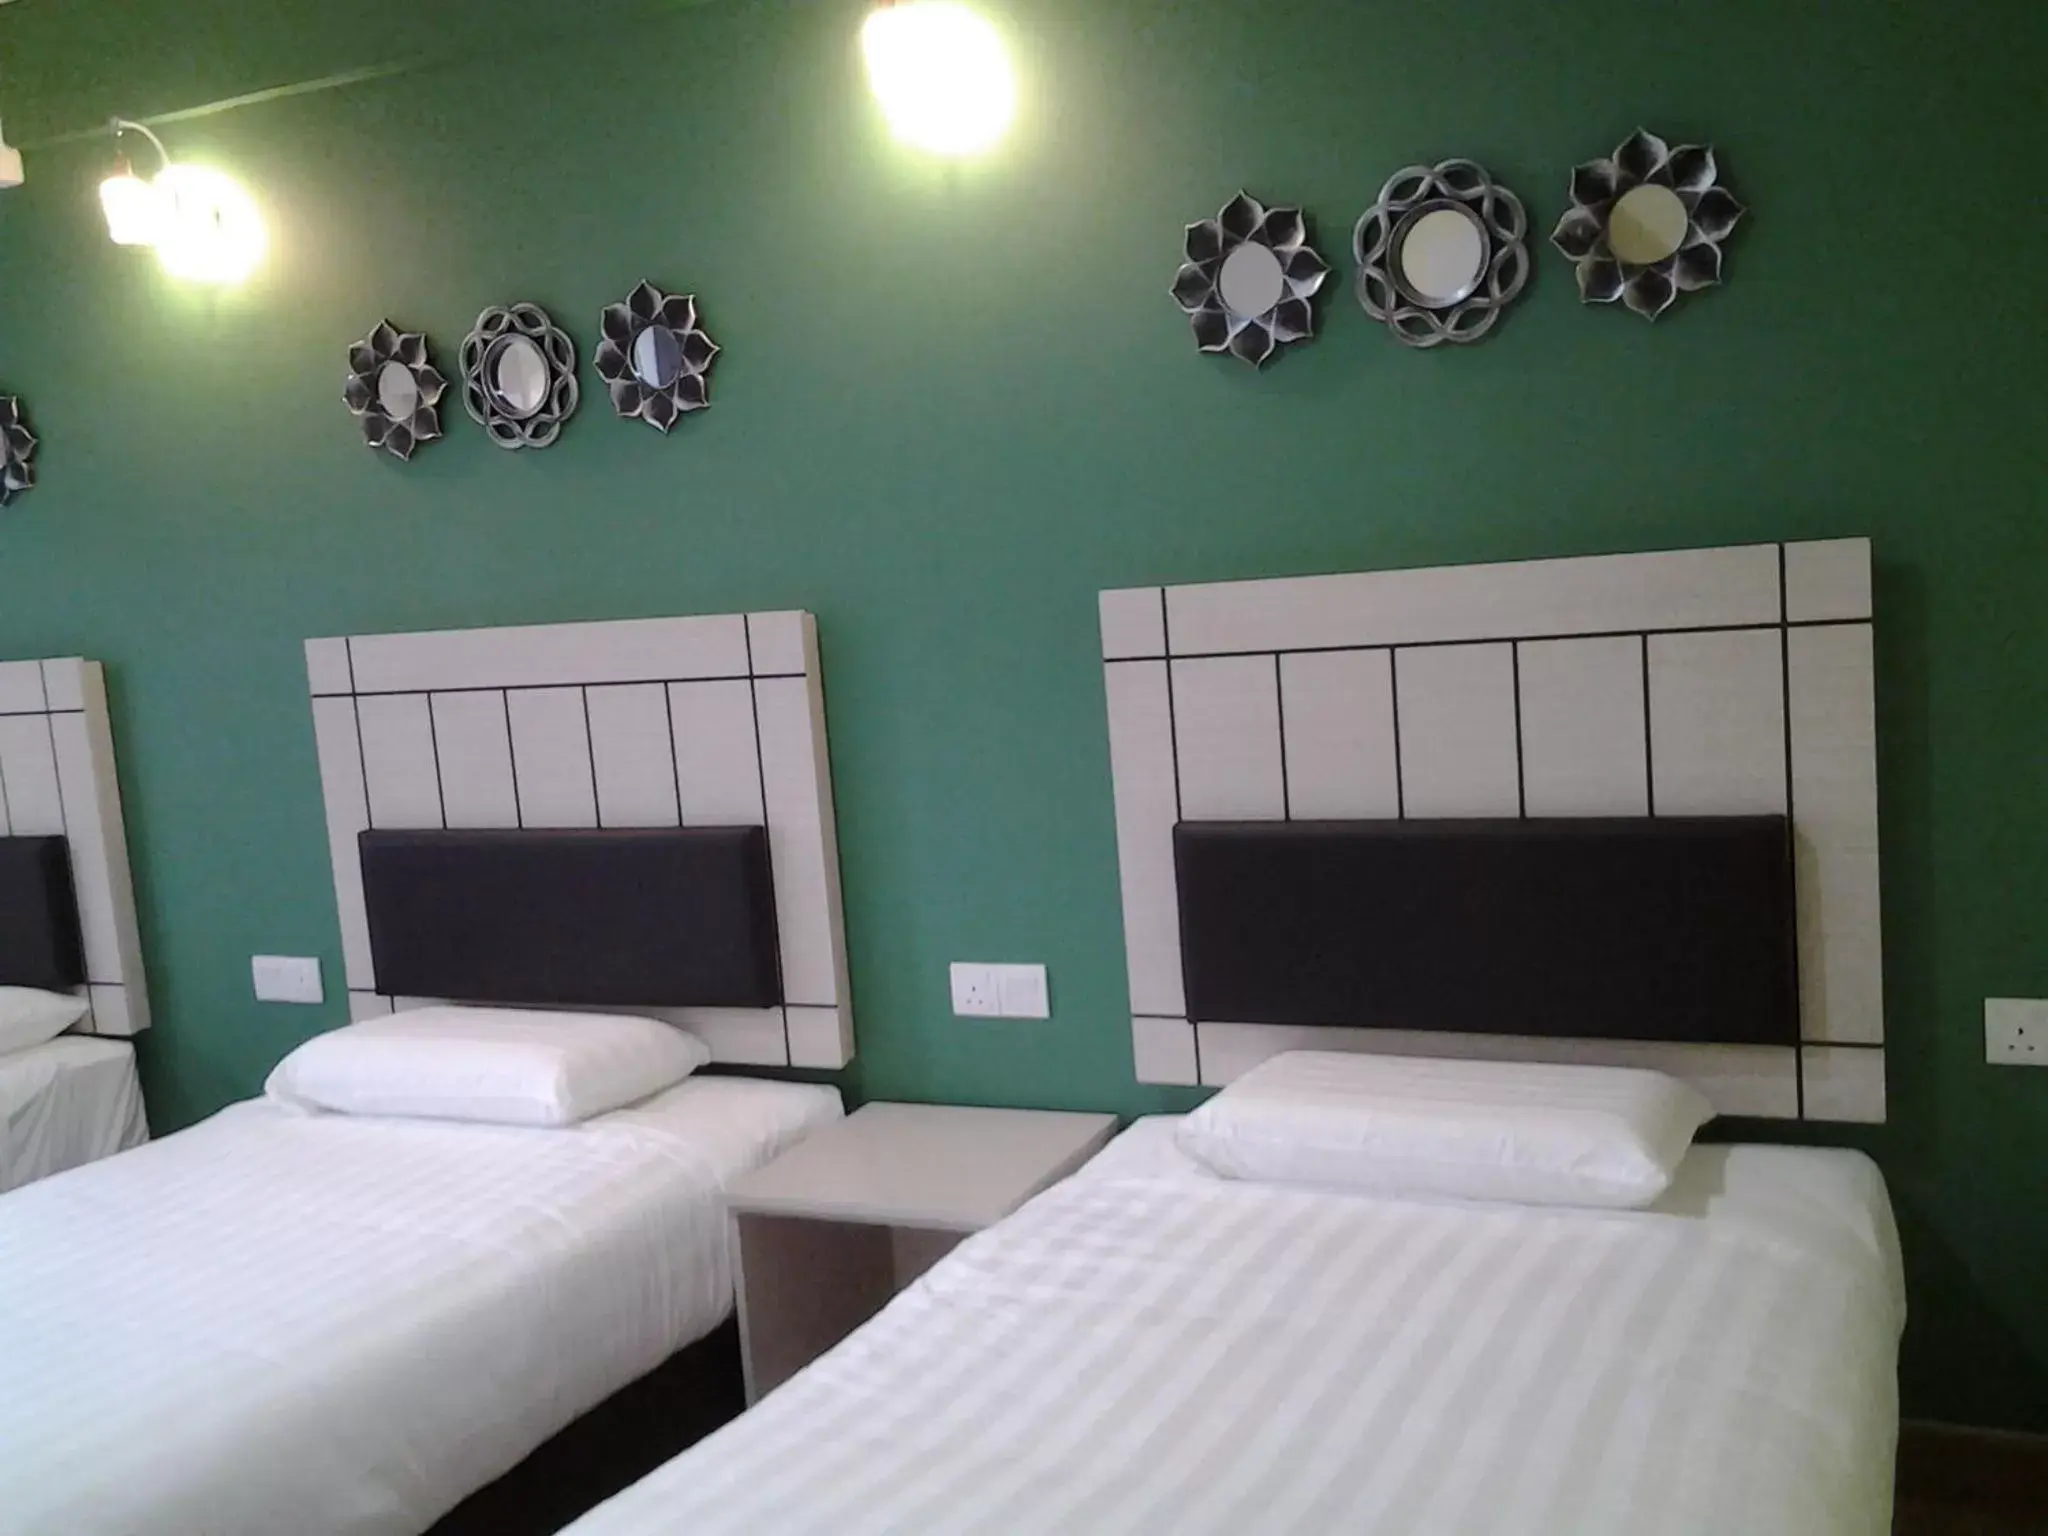 Decorative detail, Bed in Suria Seremban Hotel